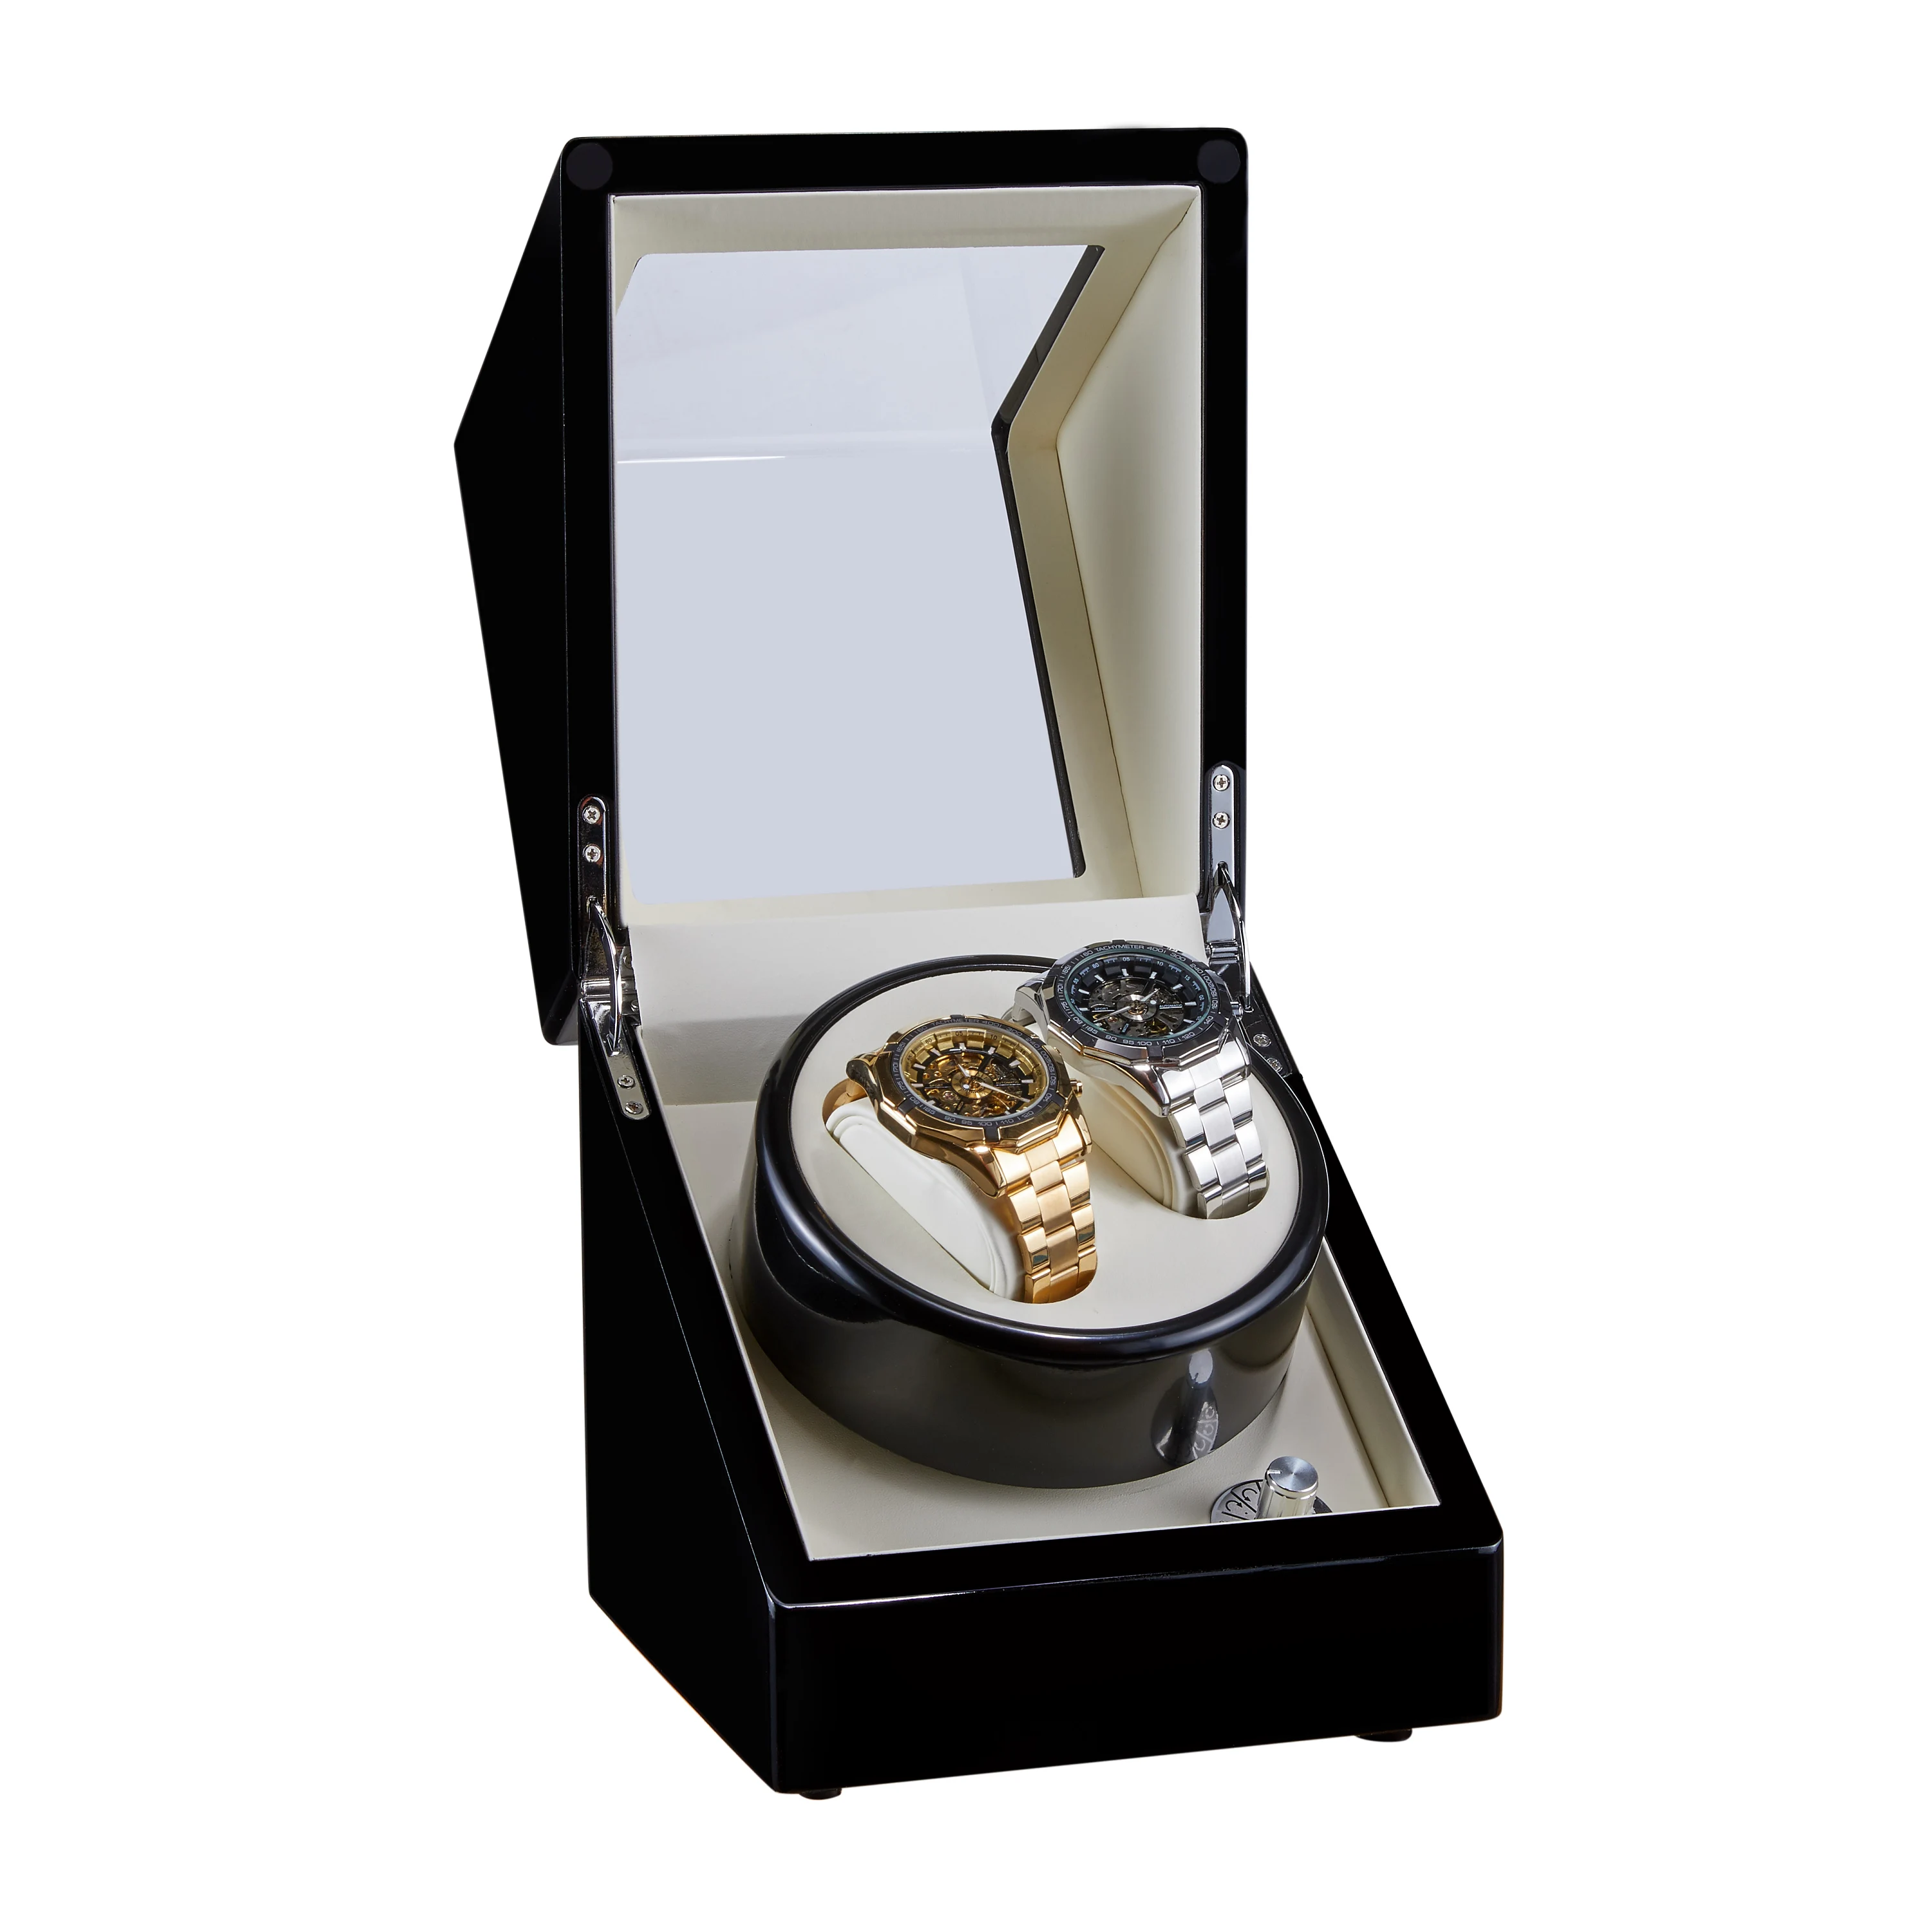 Черный Деревянный виндер механических часов мотор шейкер двойной часы коробка с подзаводом держатель дисплей для хранения ювелирных изделий Органайзер W113D-BT